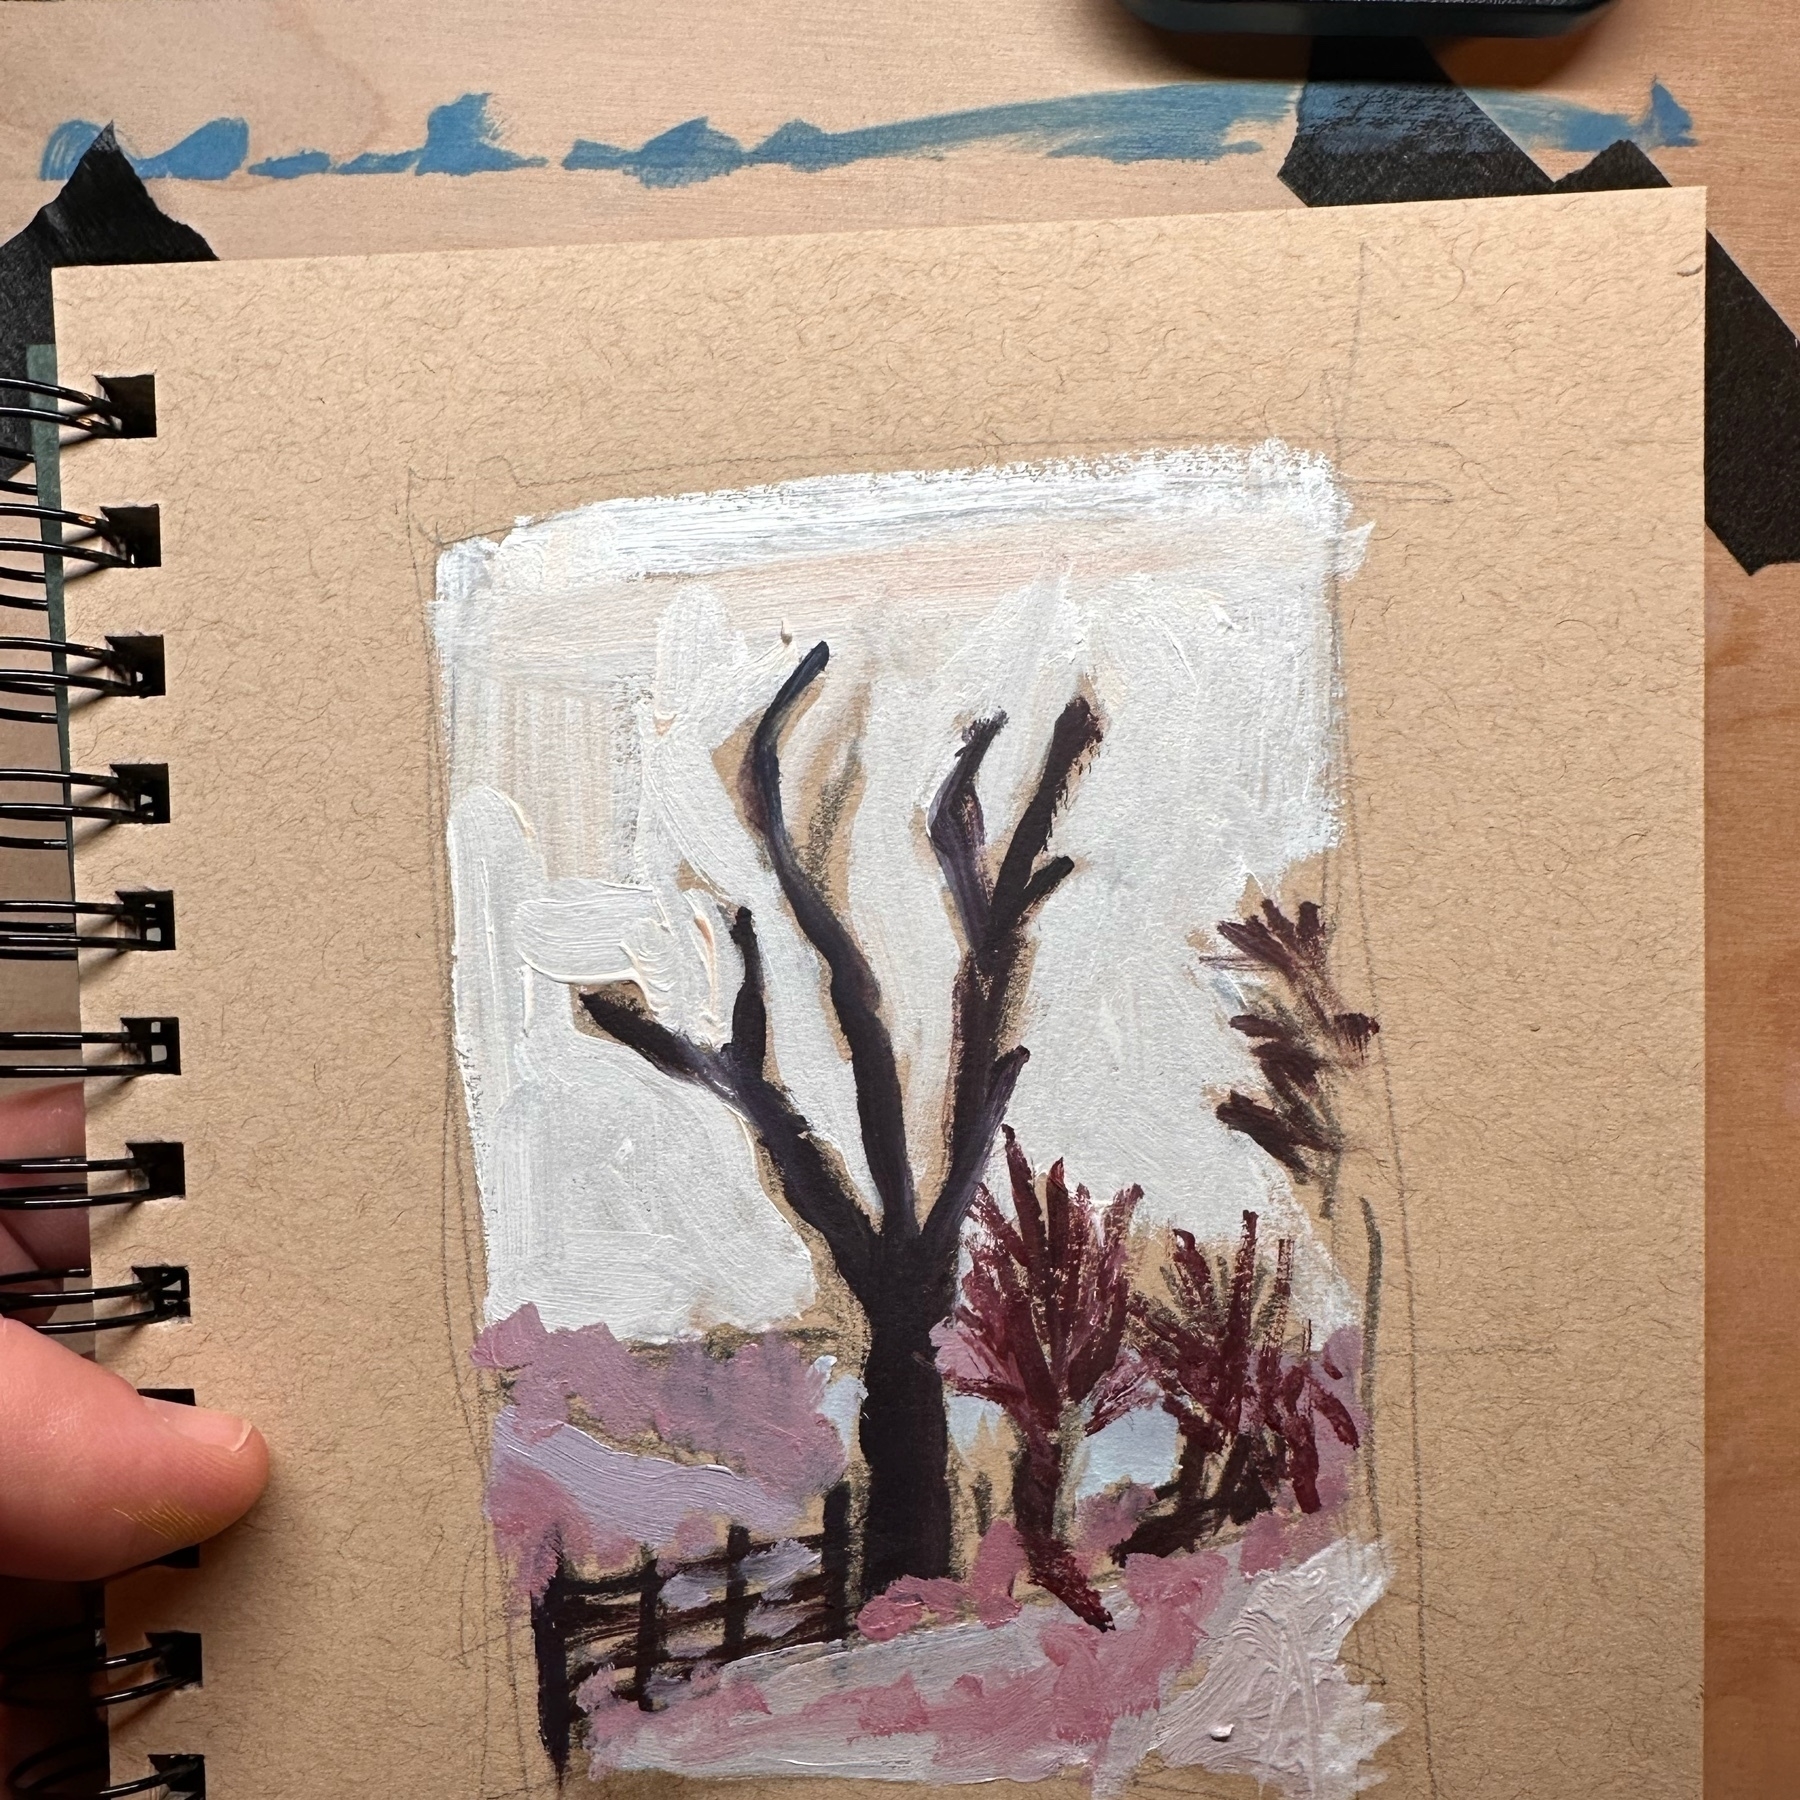 oil sketch of tree in snowy landscape